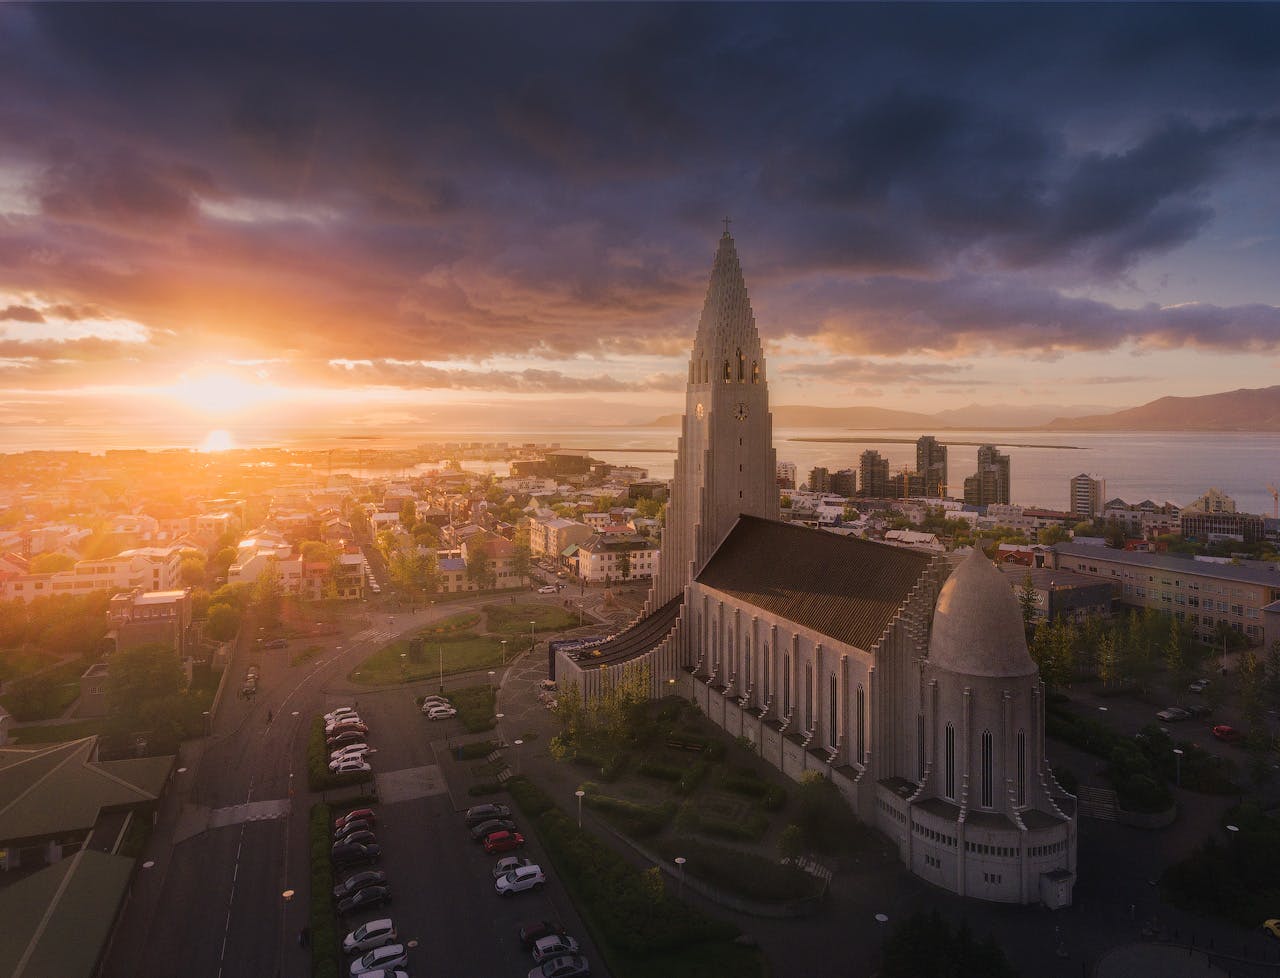 Charakterystyczny budynek w Reykjaviku, kościół Hallgrímskirkja, skąpany w promieniach letniego słońca.